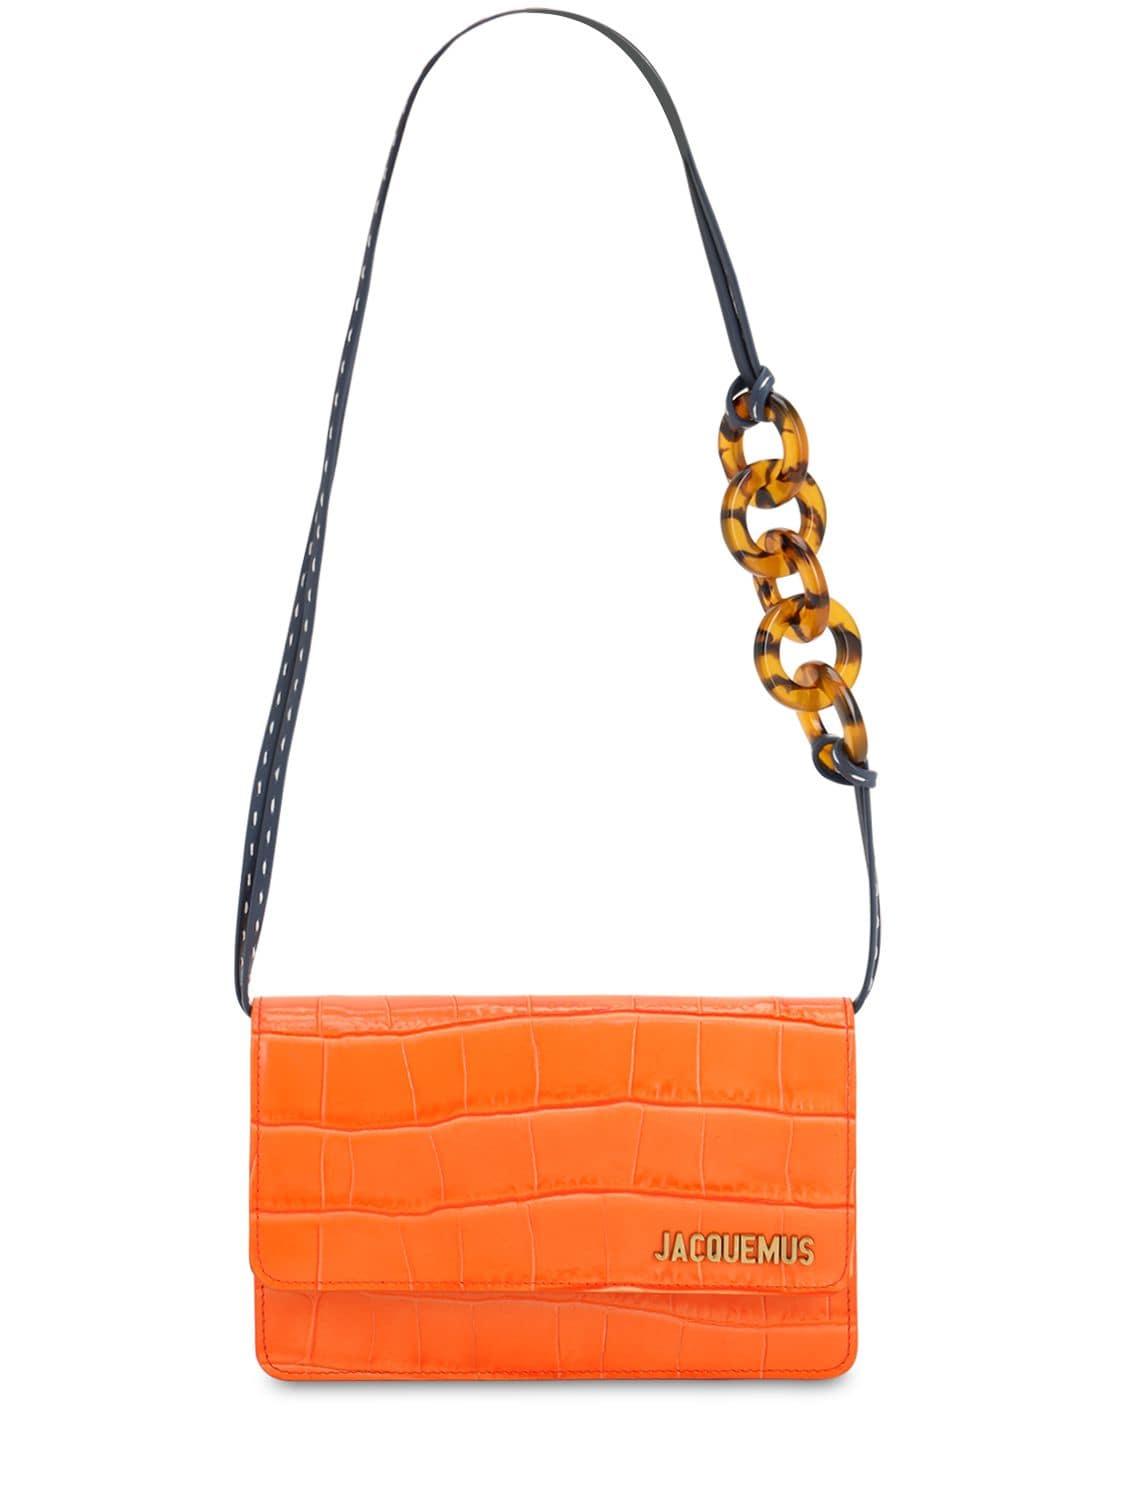 Jacquemus Le Sac Riviera Croc Embossed Leather Bag in Orange | Lyst